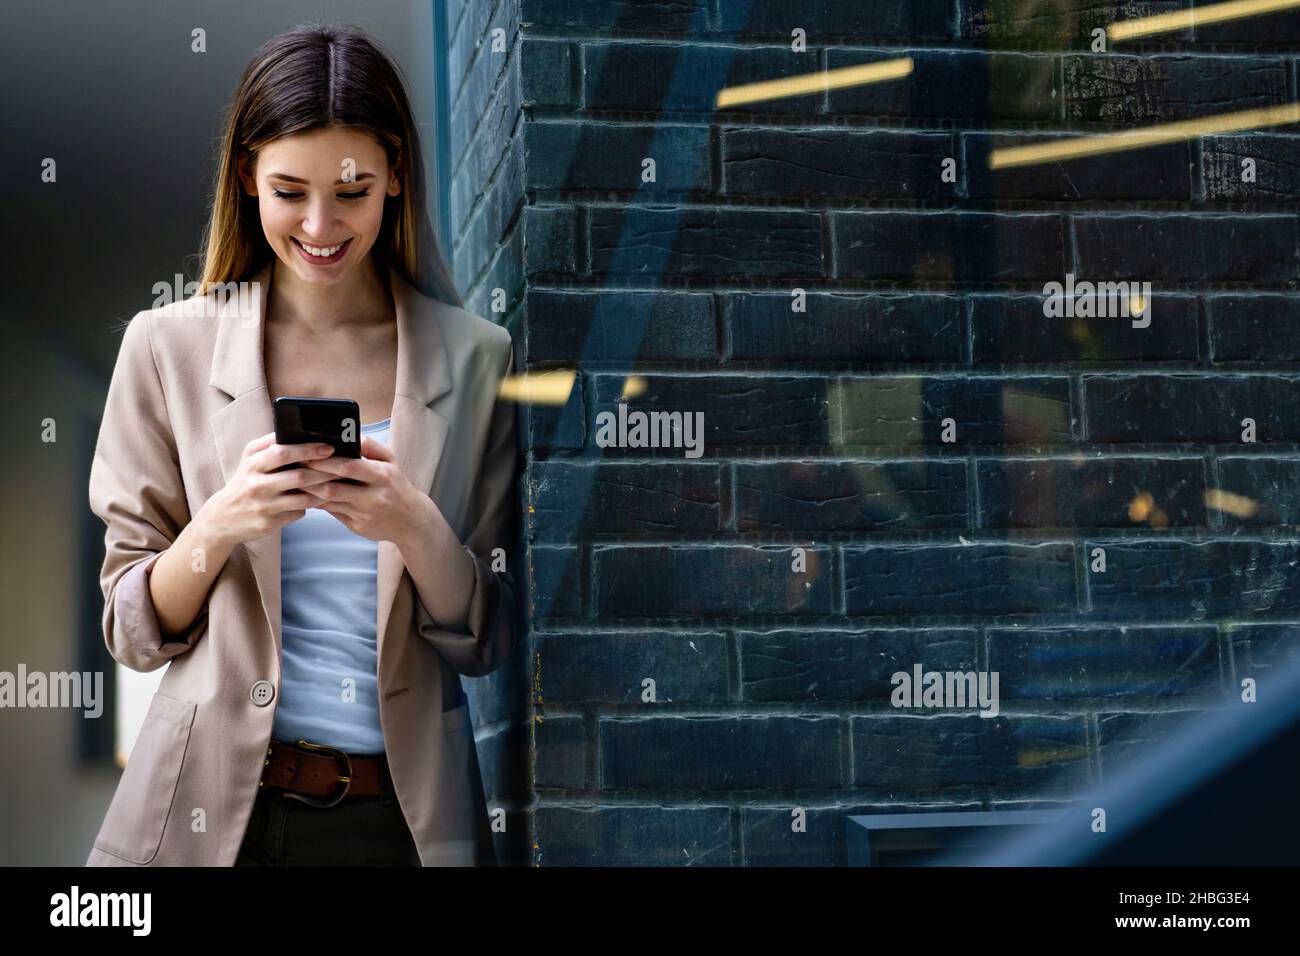 Ritratto di donna di successo con mobile in background urbano. Concetto di dispositivi tecnologici aziendali Foto Stock